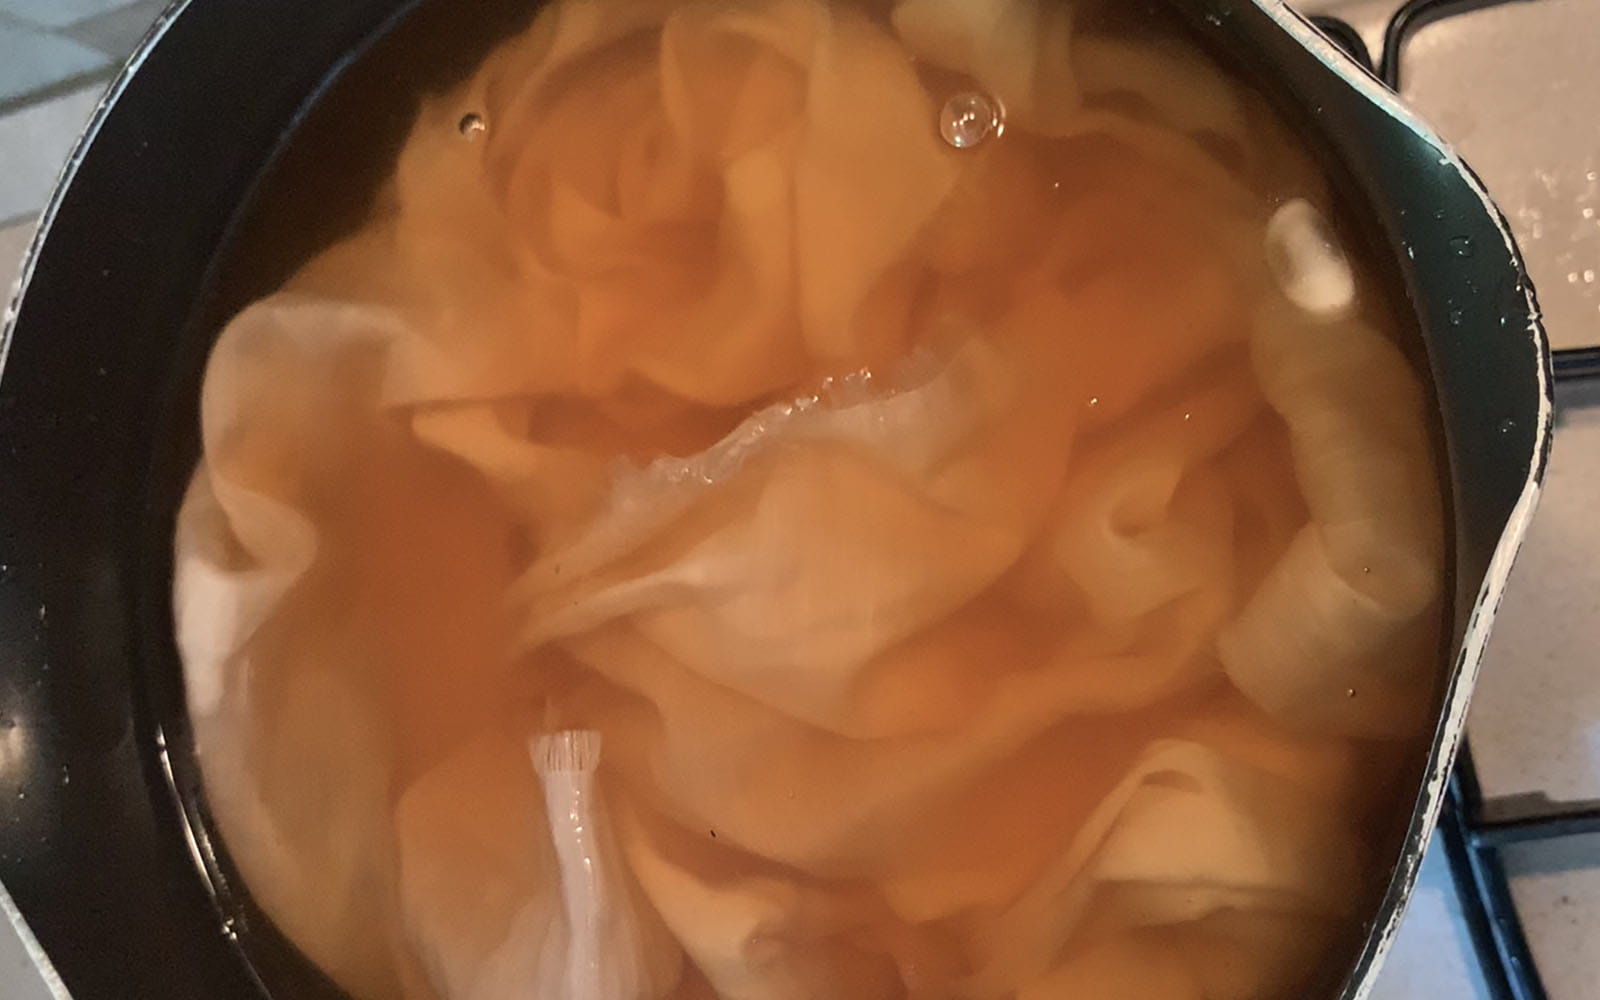 Pfirsichfarbener Seidenstoff in Avocadofarbe in einem Kochtopf getaucht